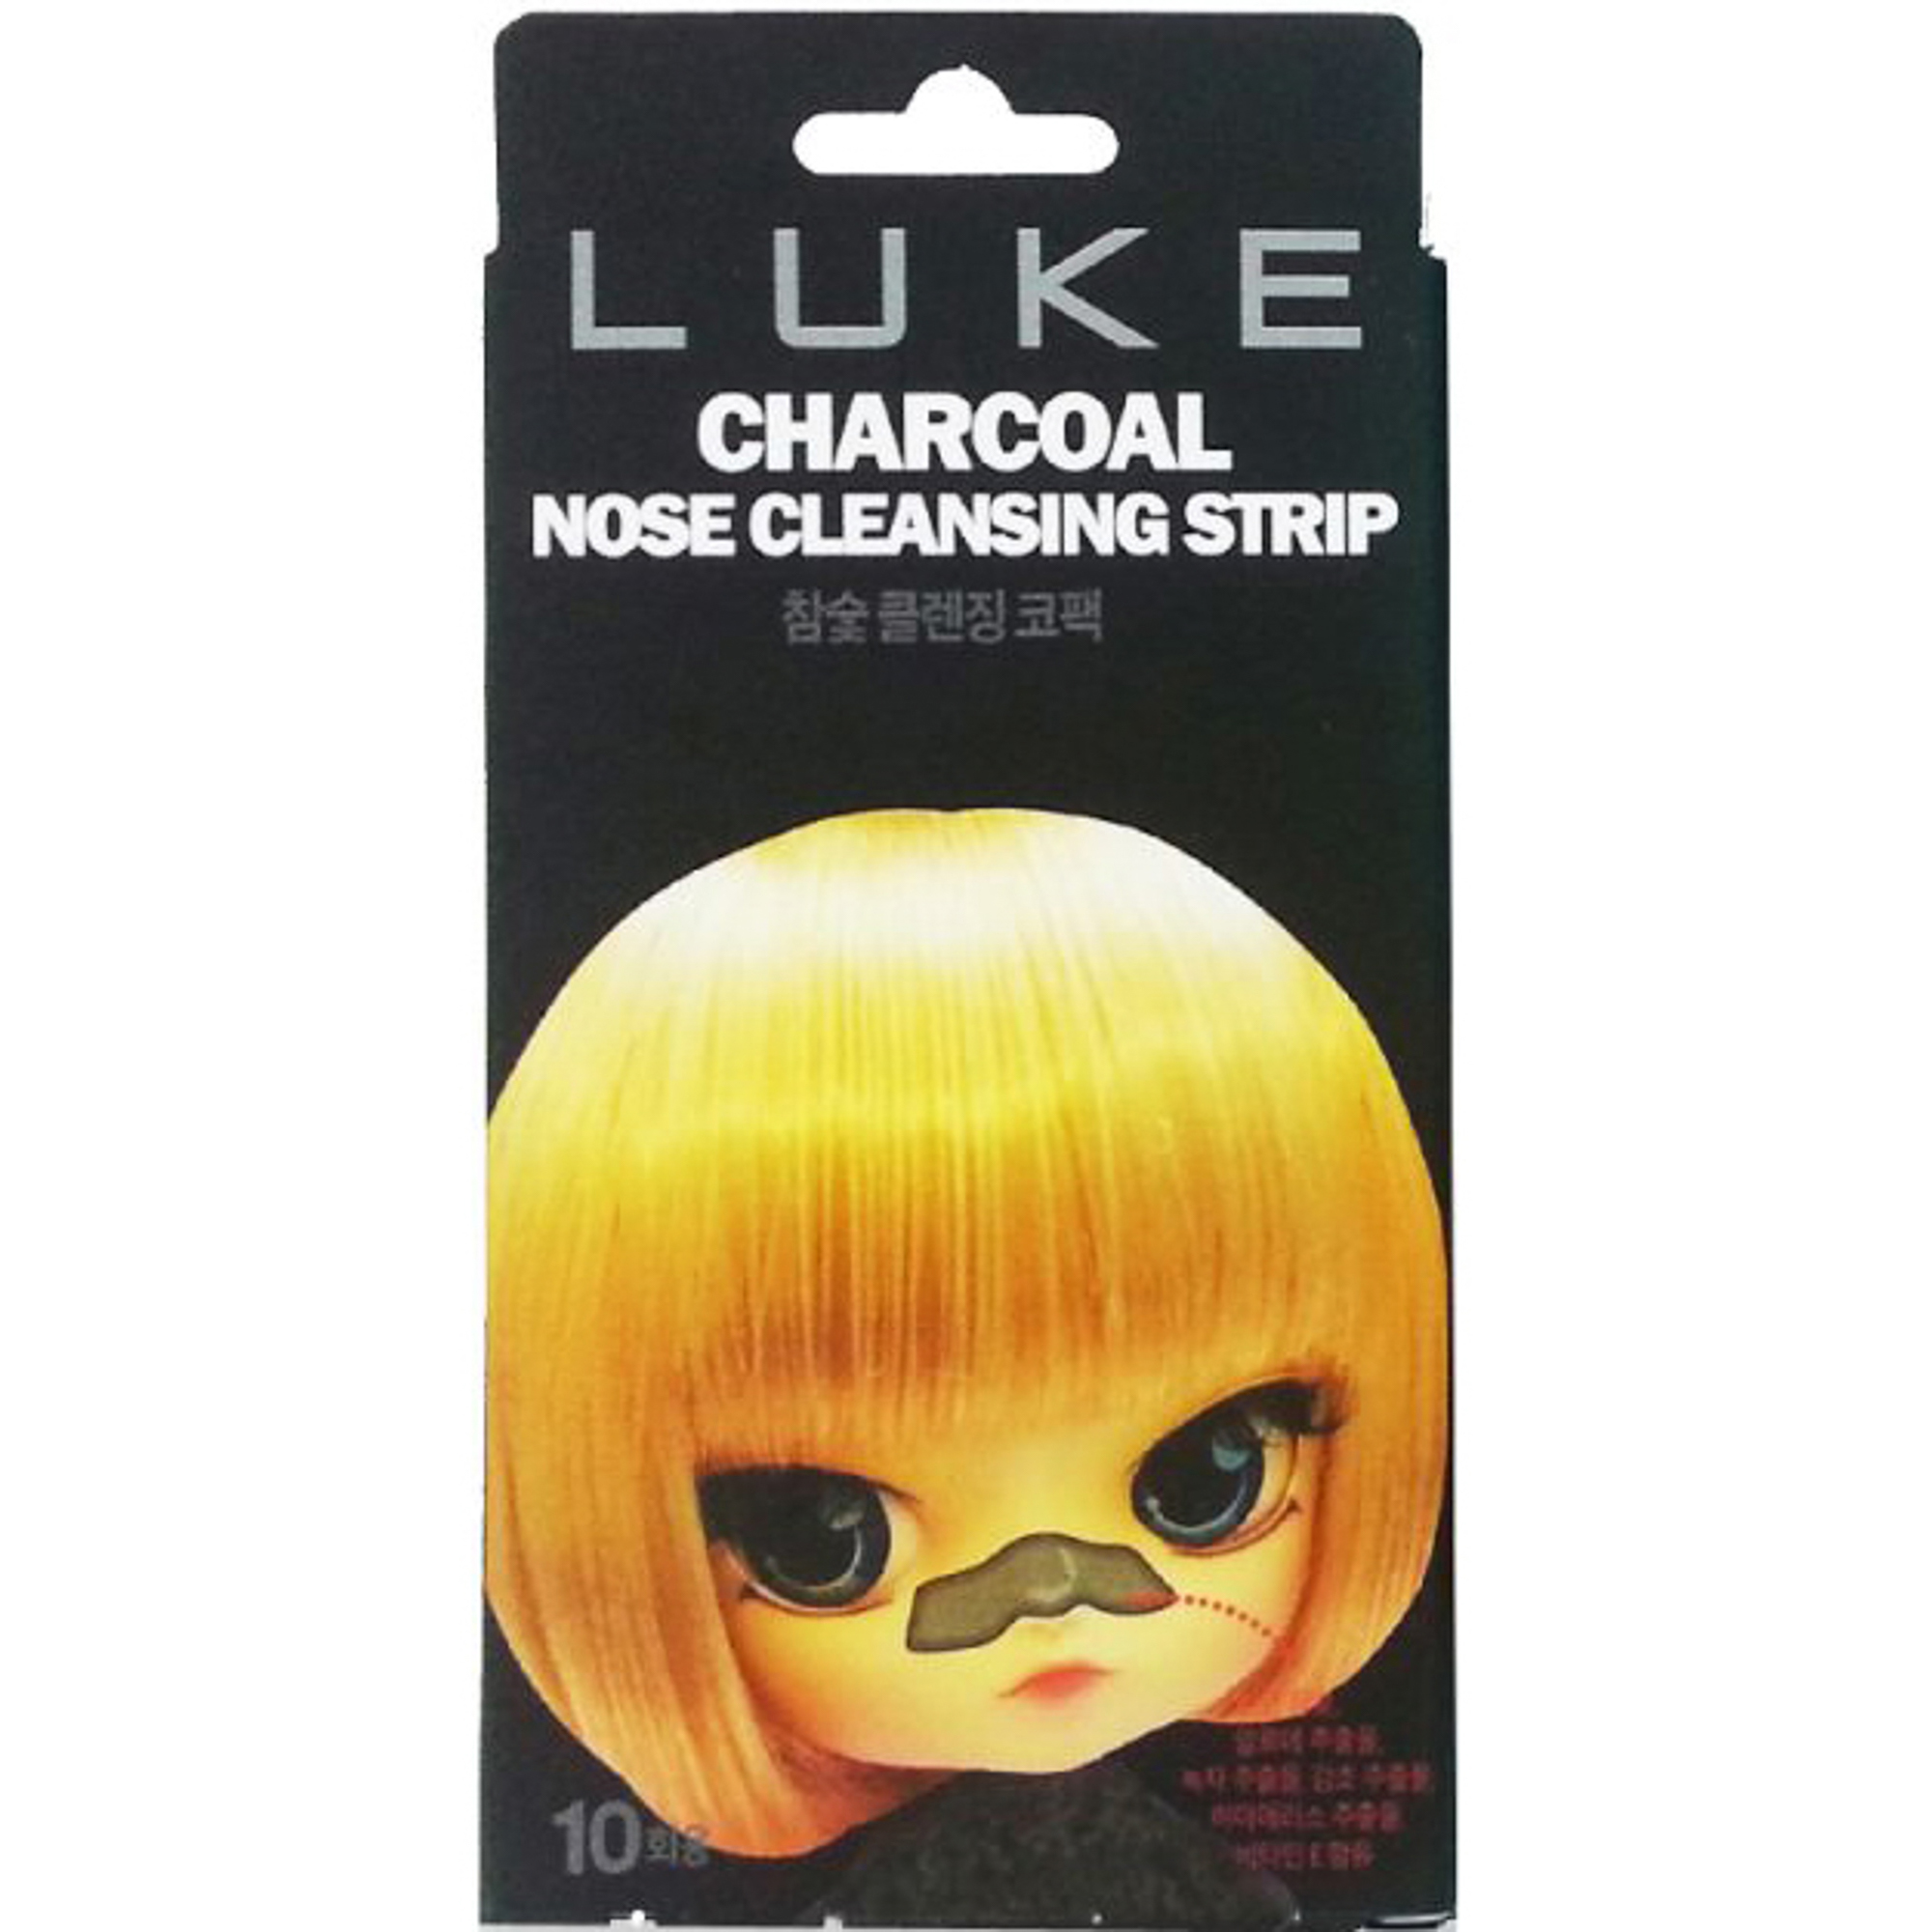 Очищающие полоски Luke Charcoal Nose Cleansing Strip 10 шт очищающие полоски luke charcoal nose cleansing strip 10 шт